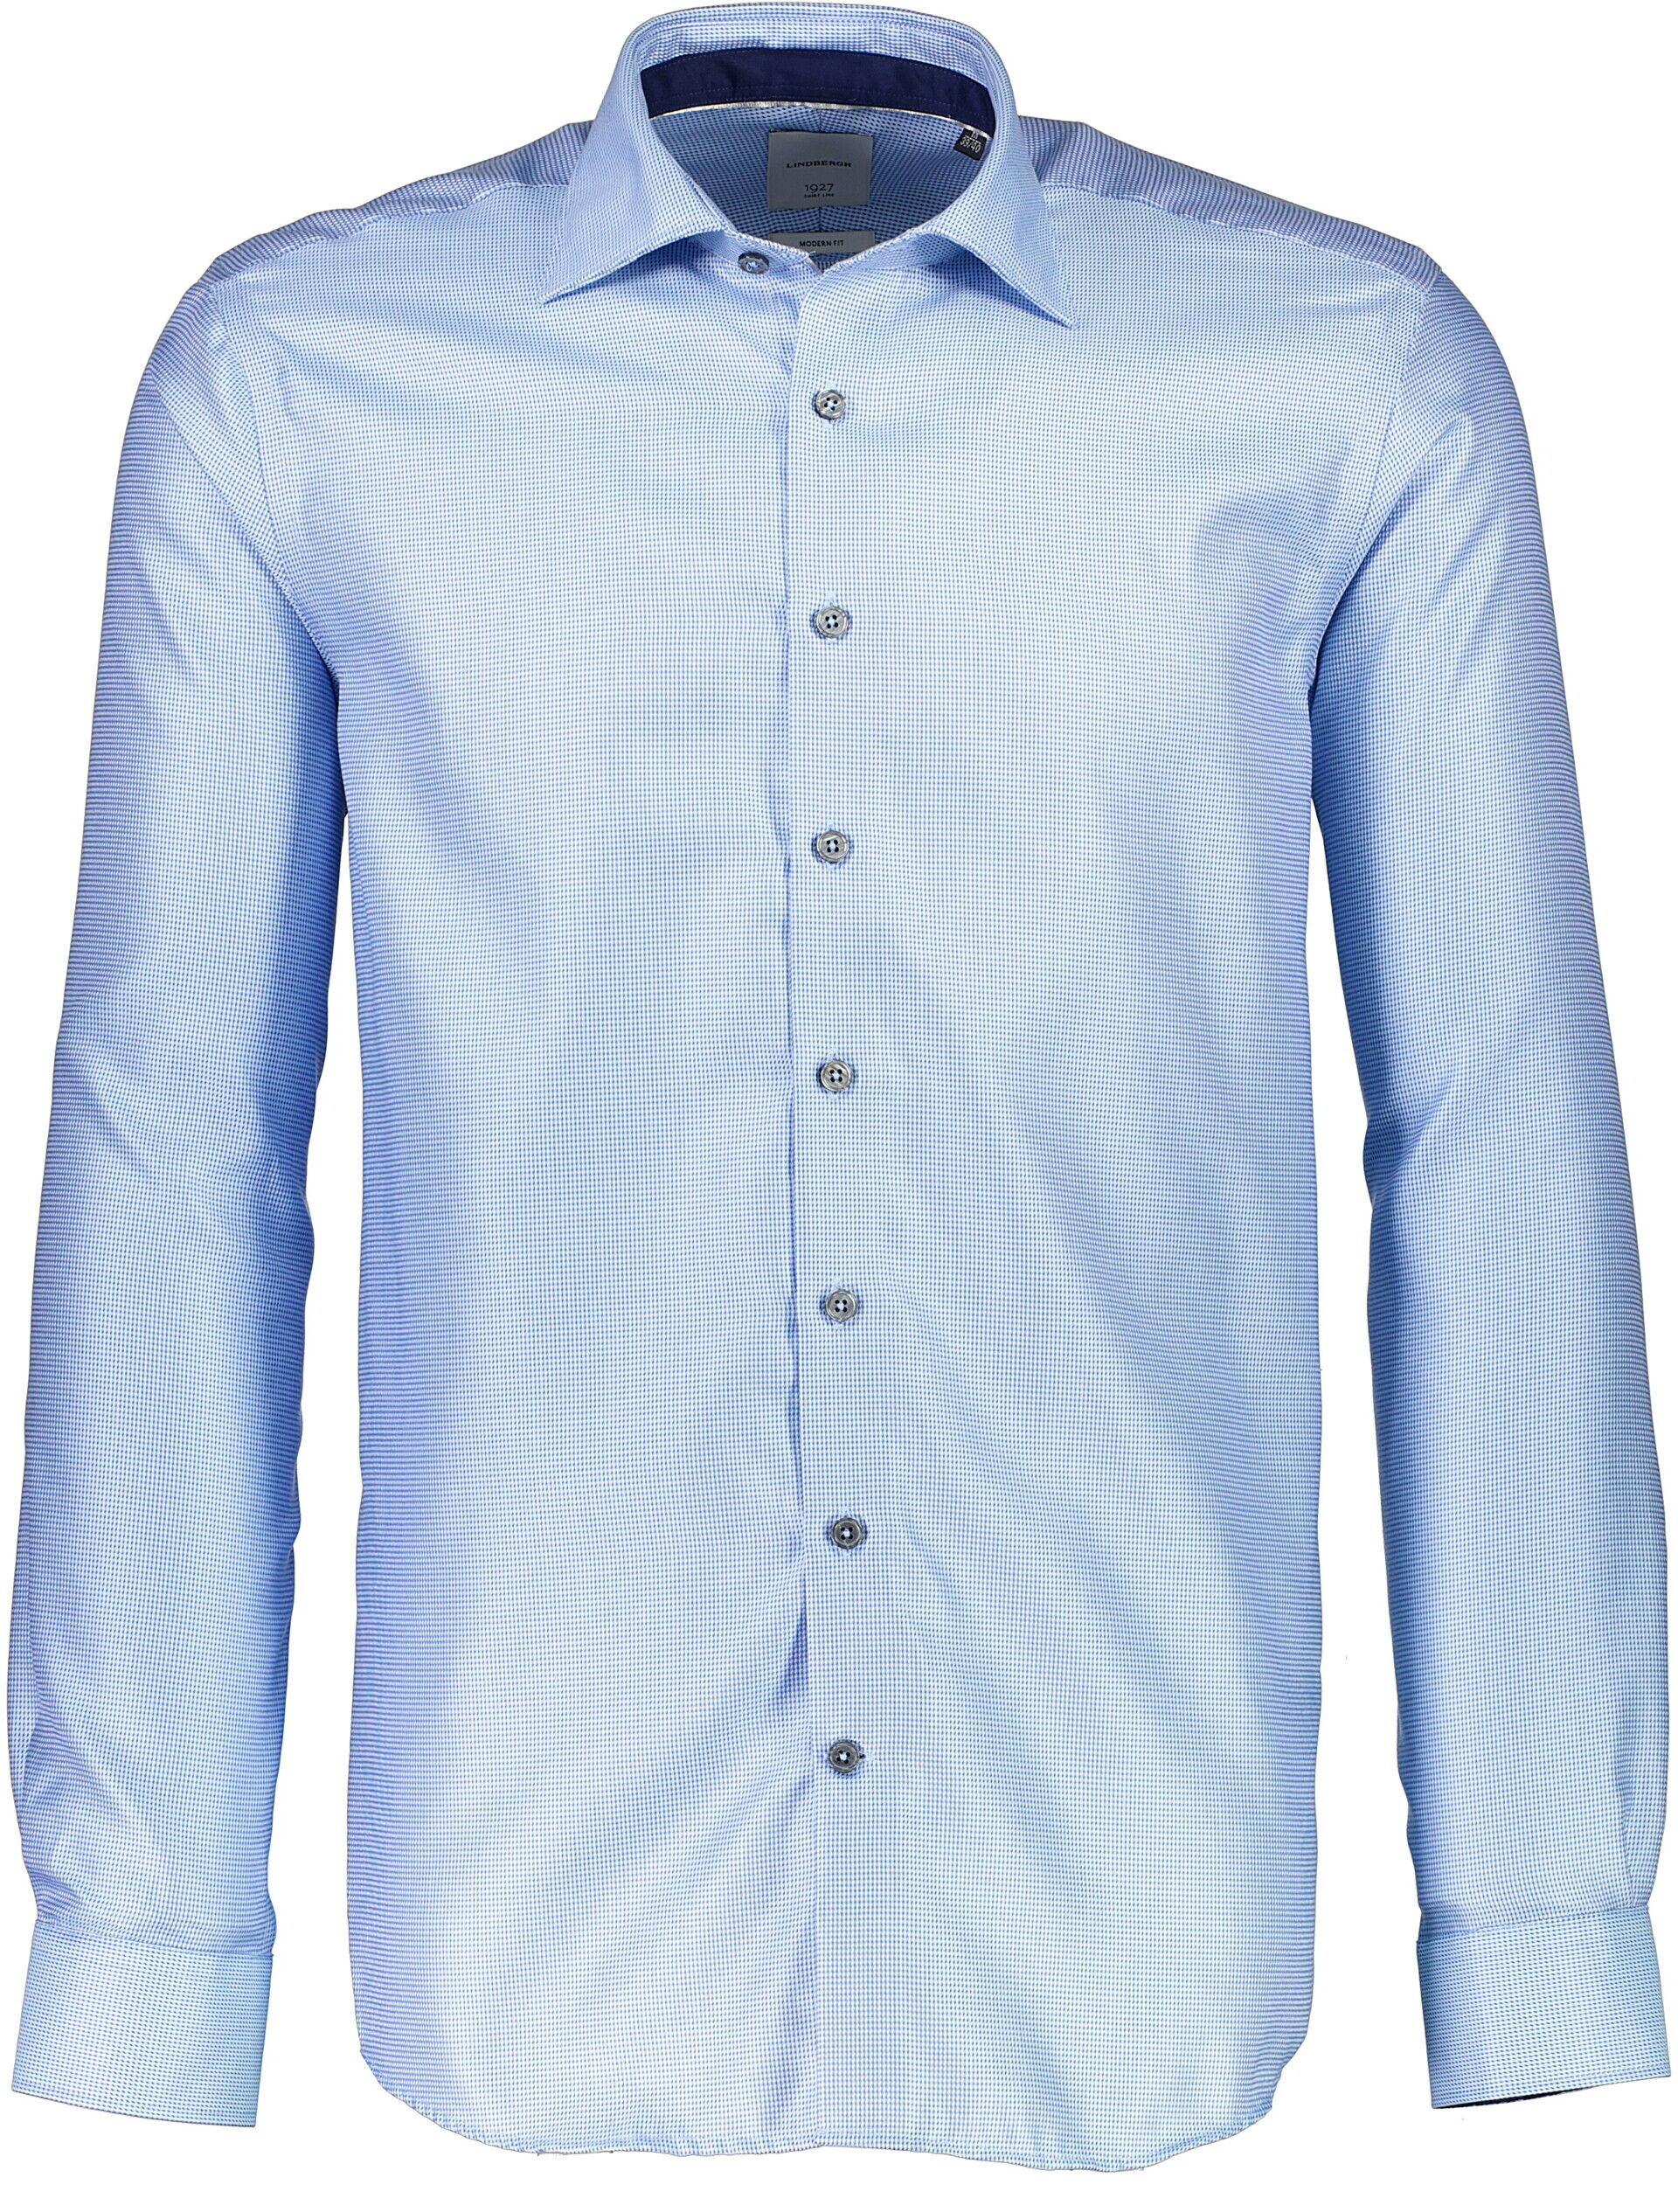 1927 Business casual shirt Business casual shirt Blue 30-247180